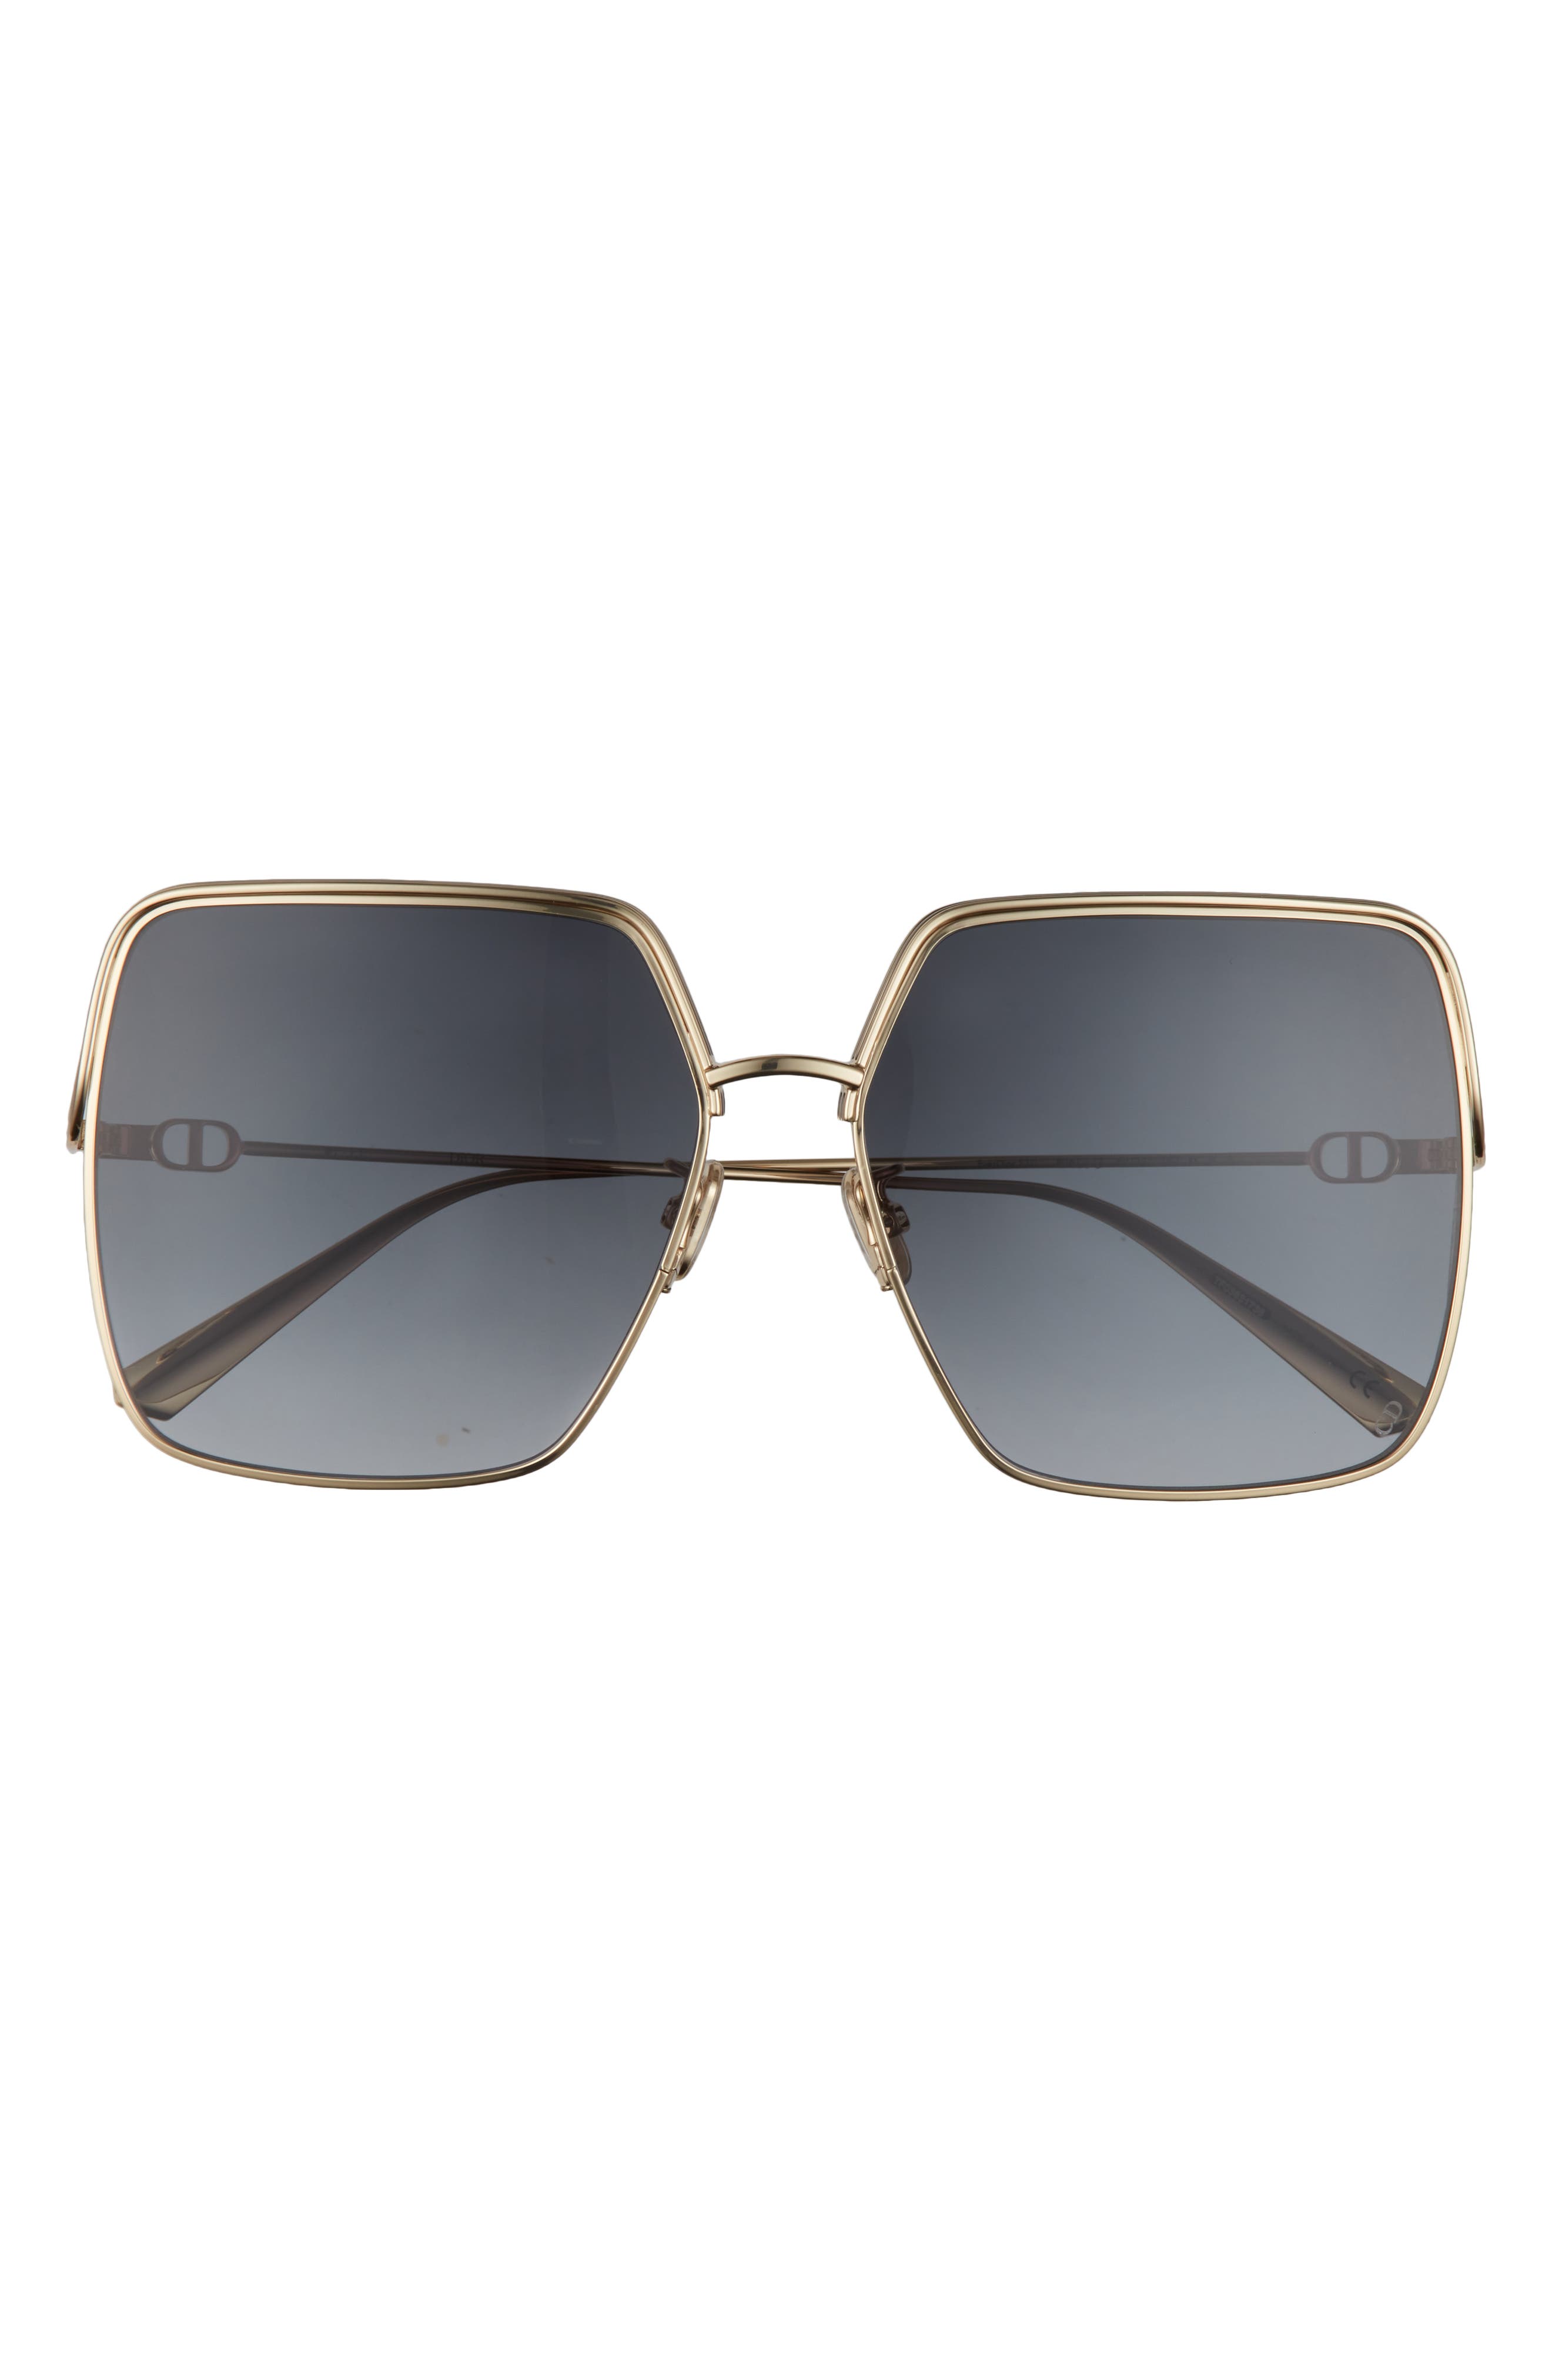 WOMEN FASHION Accessories Sunglasses NoName sunglasses discount 62% Black/Golden Single 